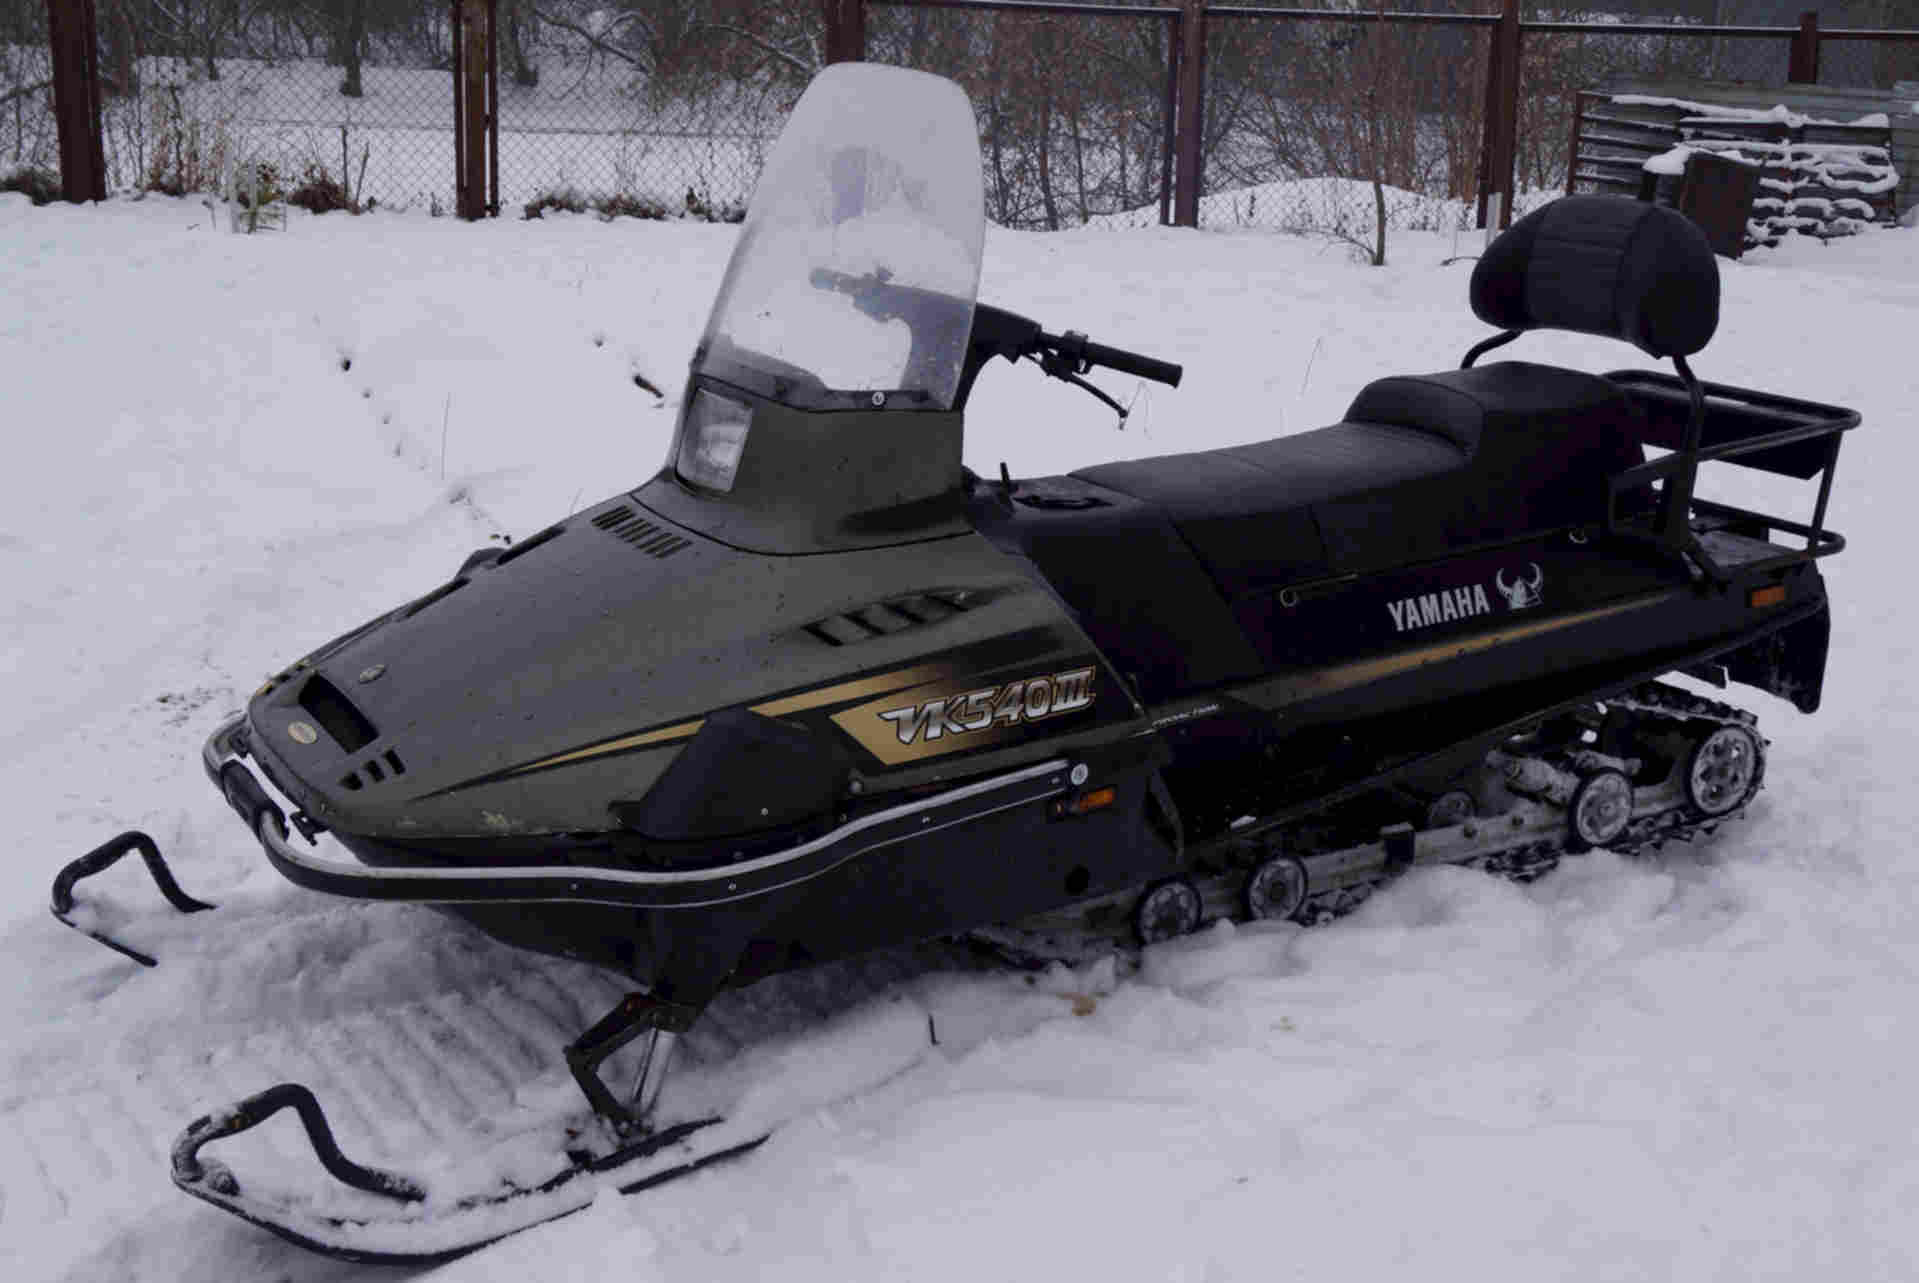 Купить снегоход ямаха в москве. Снегоход Yamaha Viking 540. Снегоход Ямаха vk540. Снегоход Ямаха ВК 540. Ямаха Викинг vk540e.